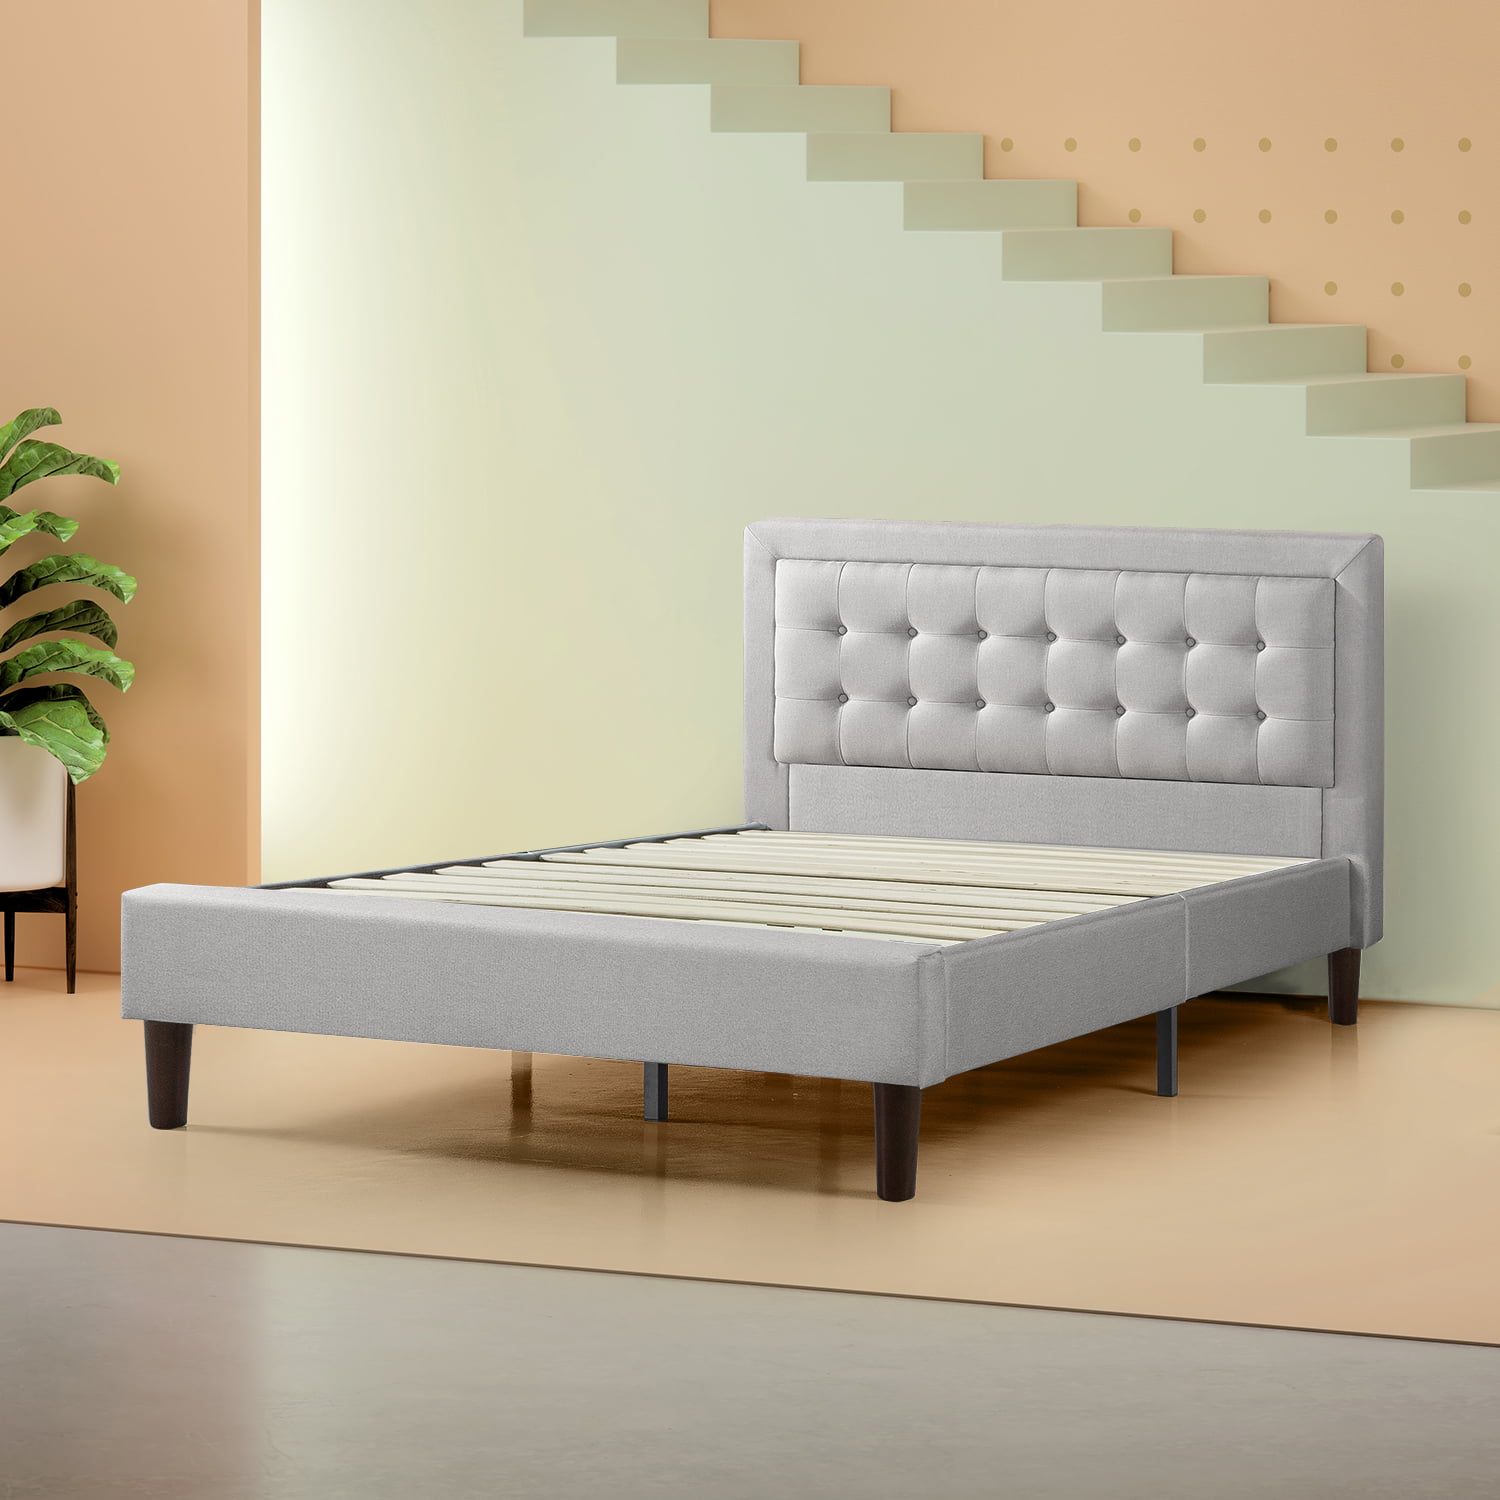 Zinus 42” Dachelle Upholstered Platform Bed Frame, King - Walmart.com